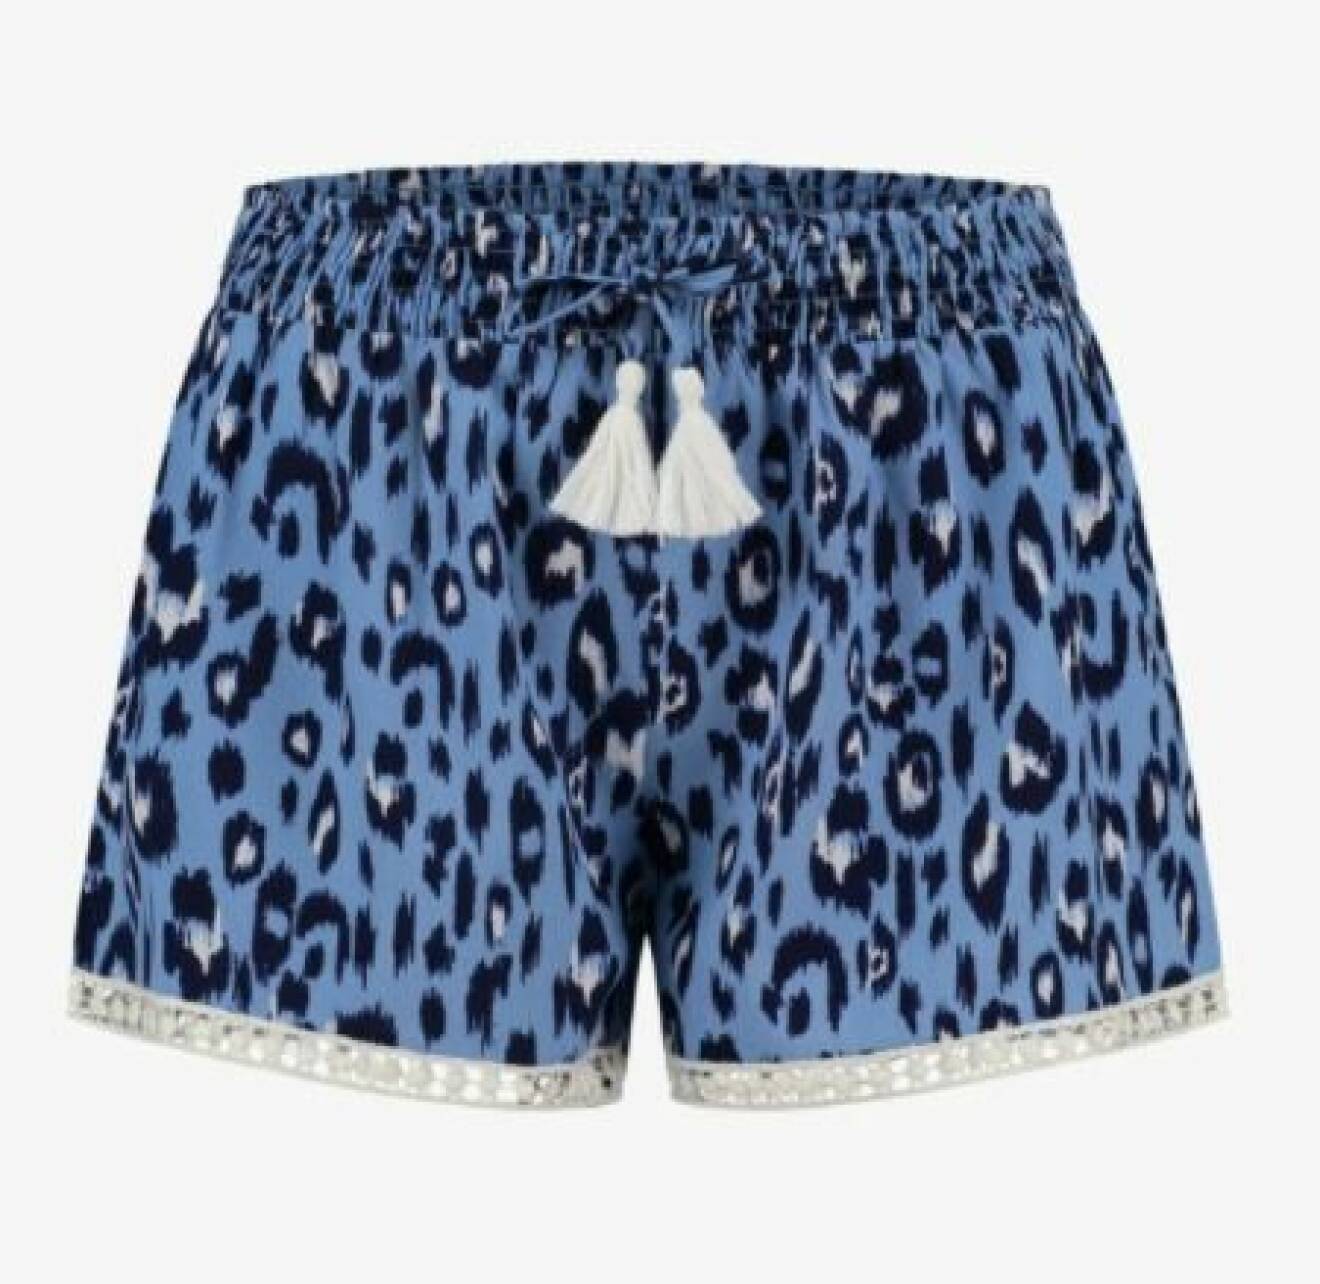 Korta shorts med resår i midjan och knytdetalj med vita toffsar. Blå leopardprint och en spetskant vid bensluten. Shorts från Shiwi.